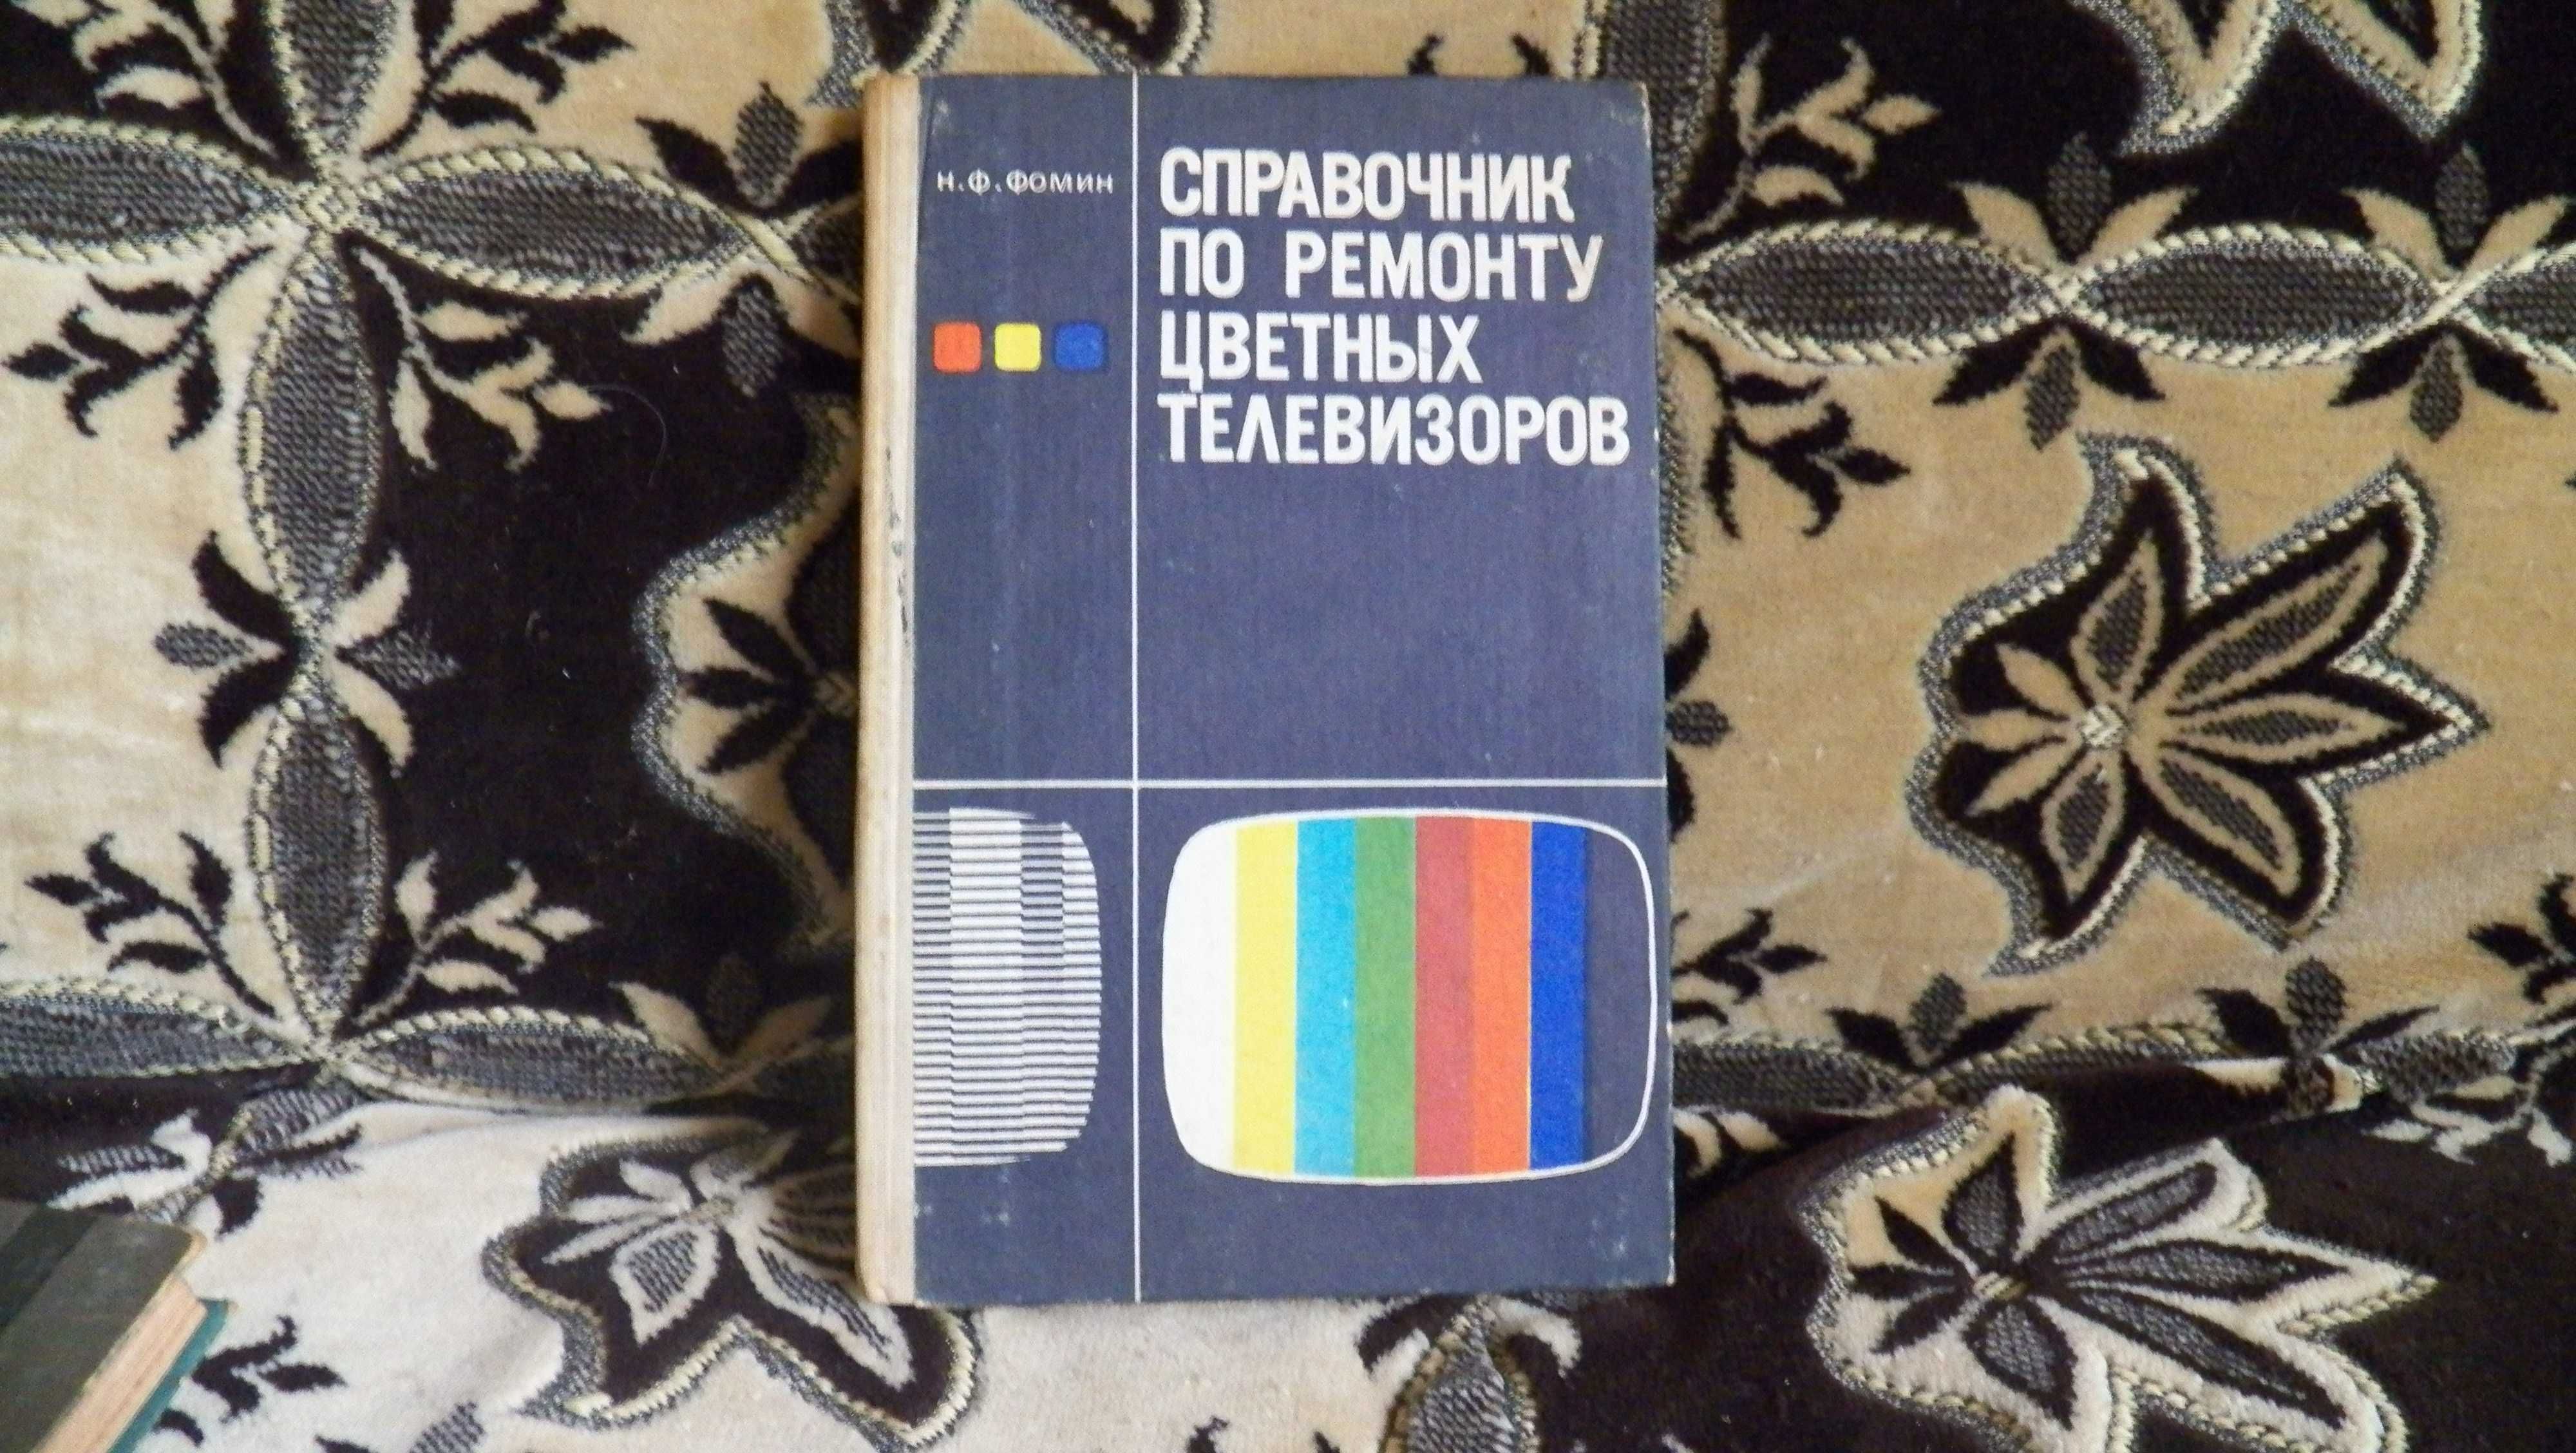 Фомин Справочник по ремонту цветных телевизоров 1986 г